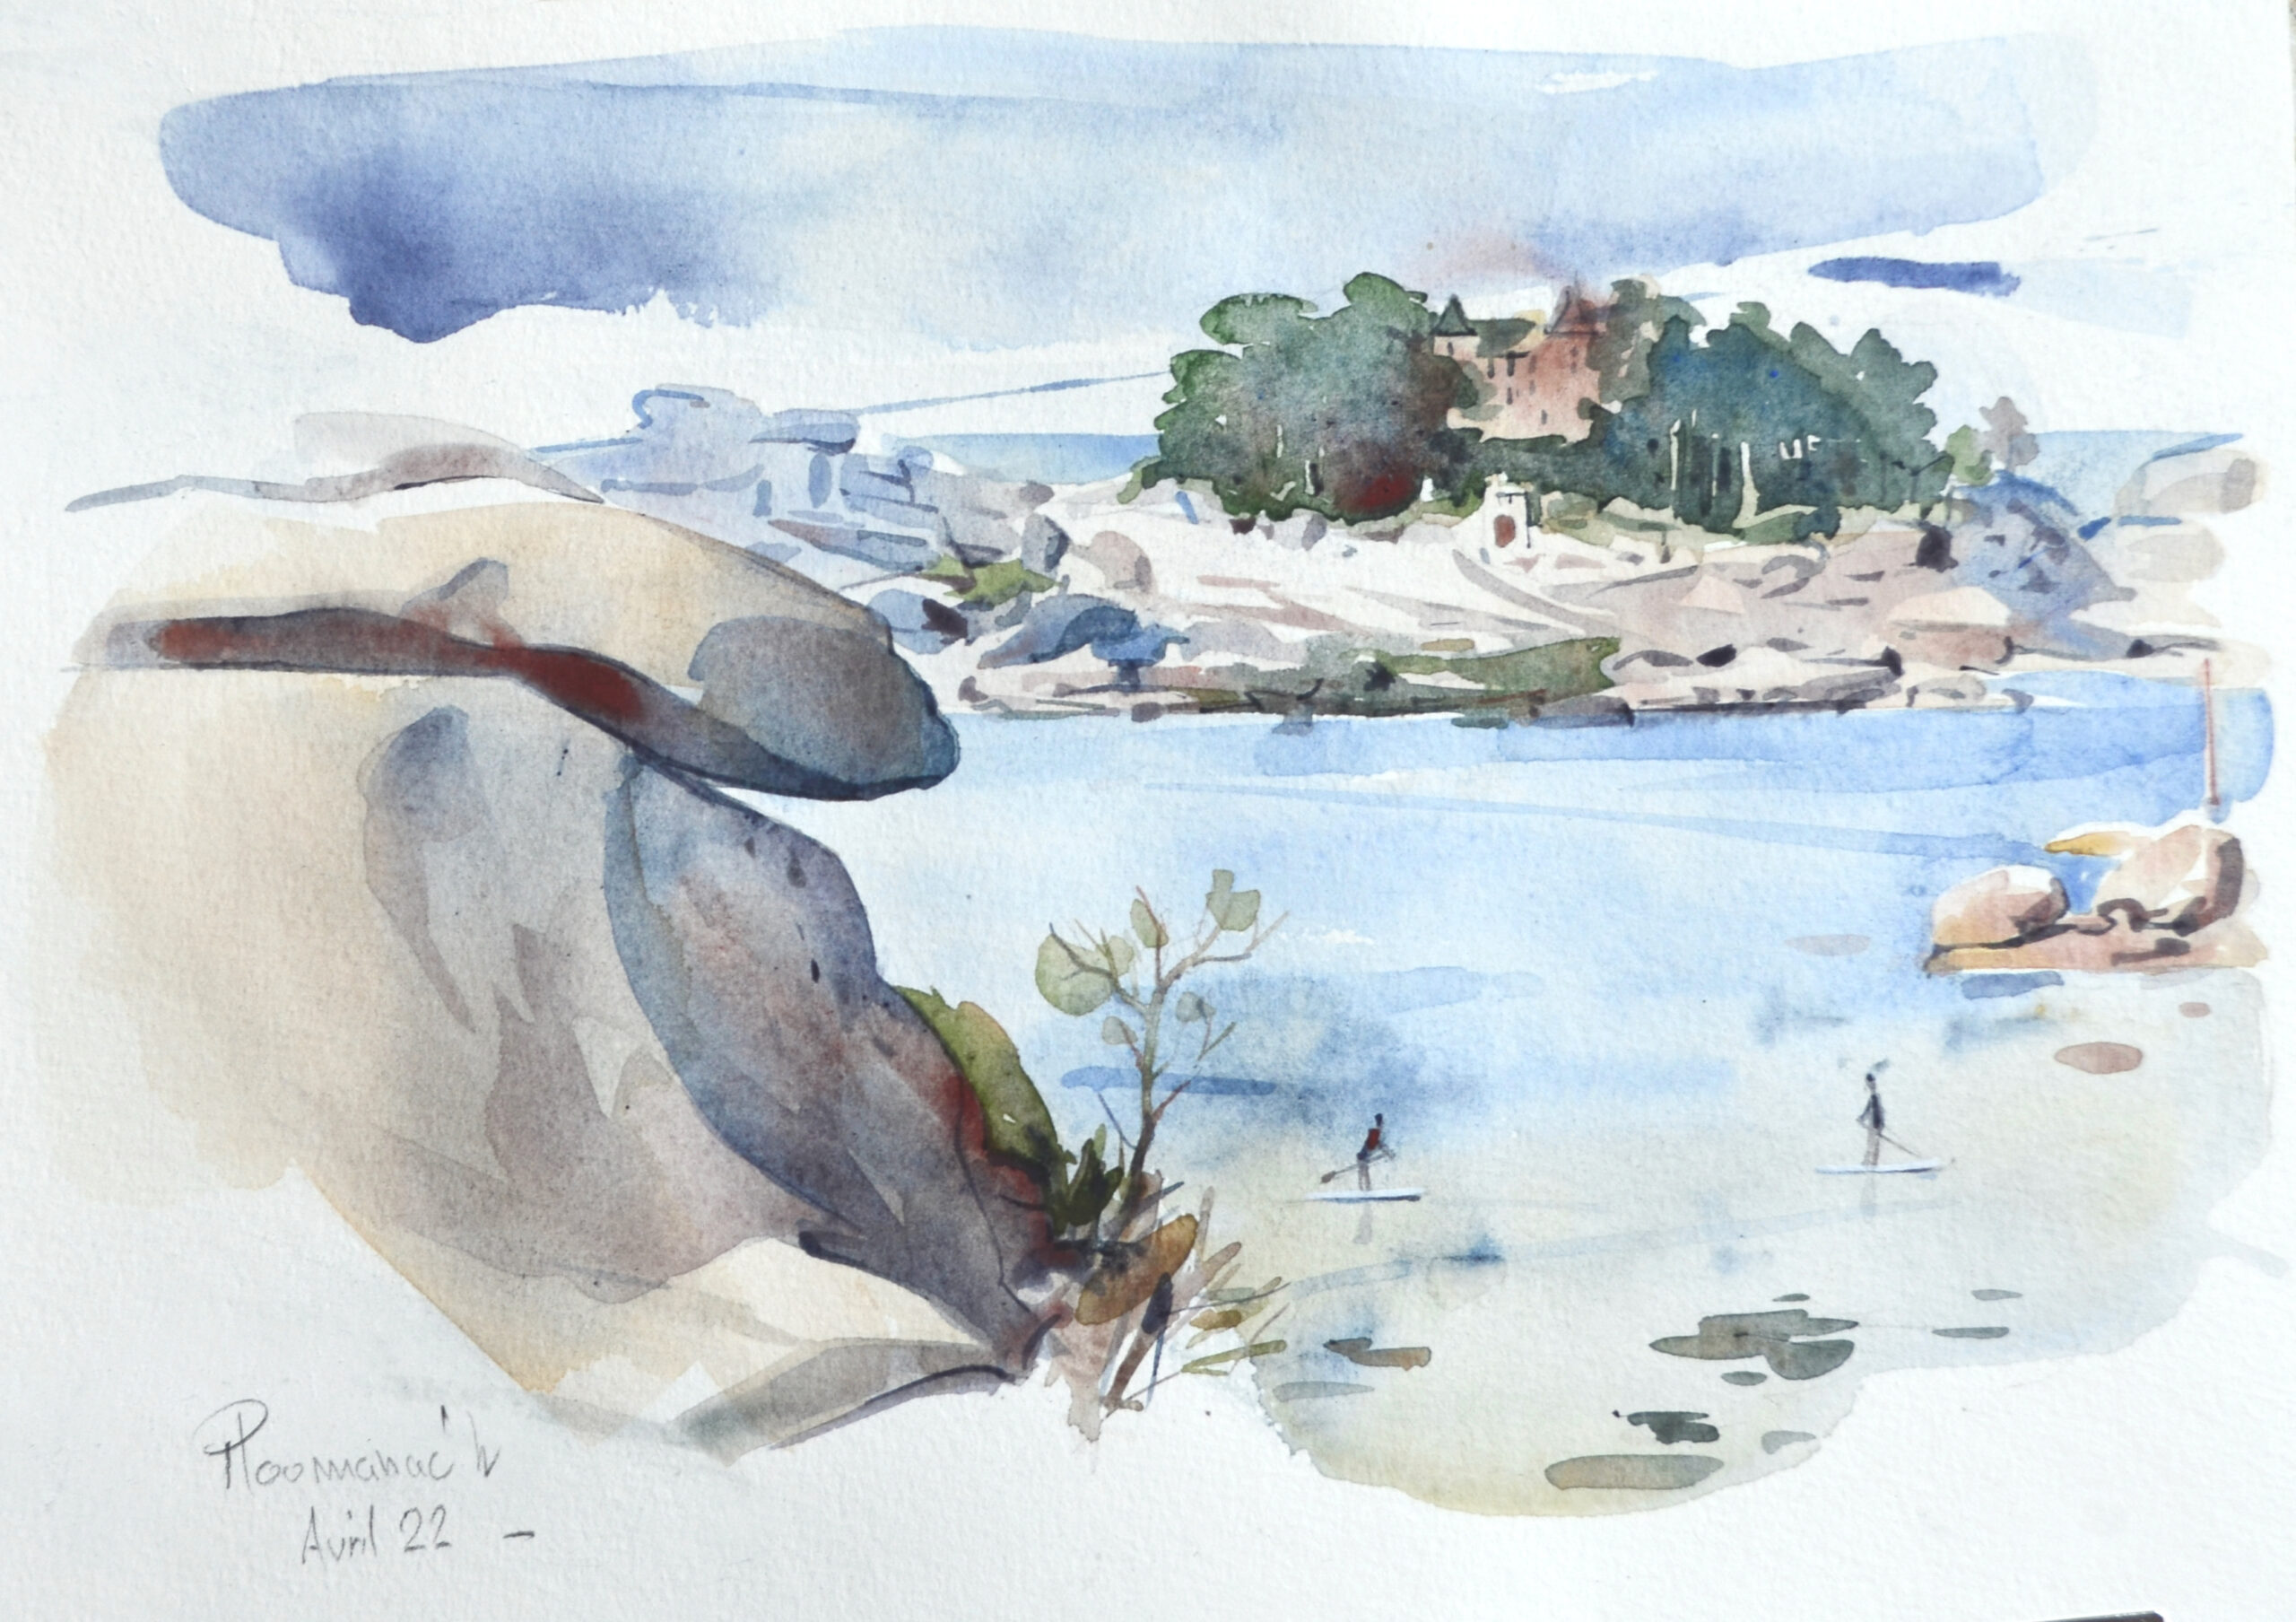 Aquarelle sur le motif  - watercolor -Patrick Clouet - artwork- landscape painting-brittany- côte de granit rose